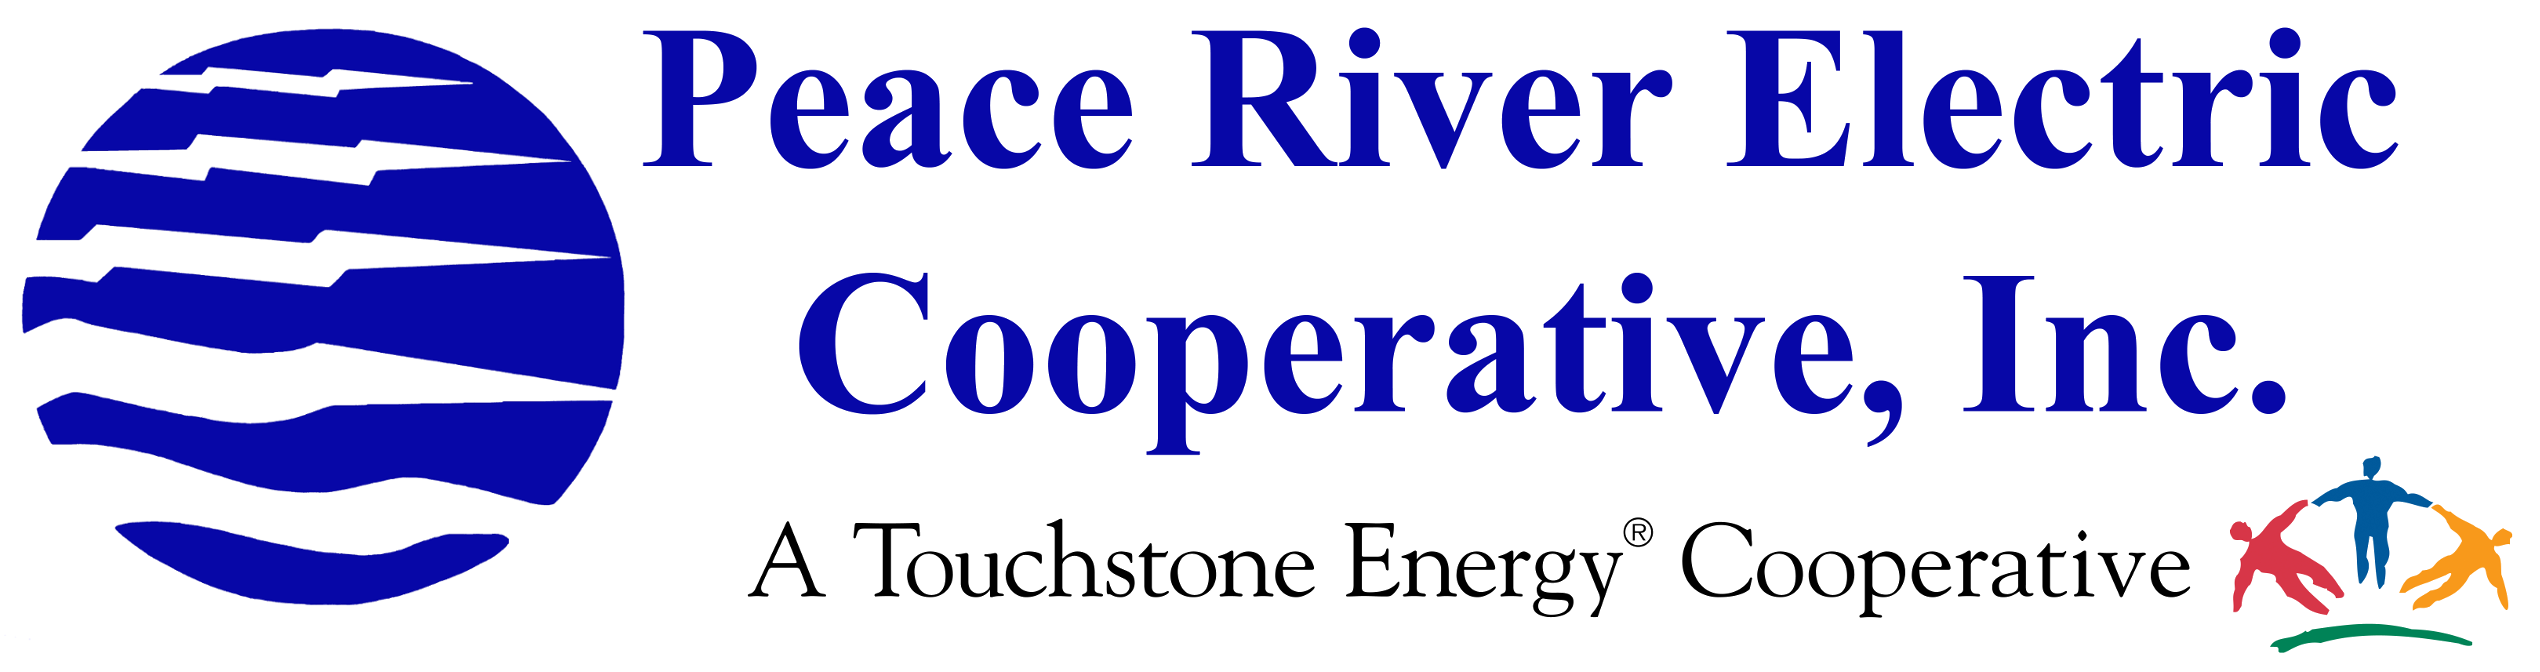 Peace River Electric Rebates